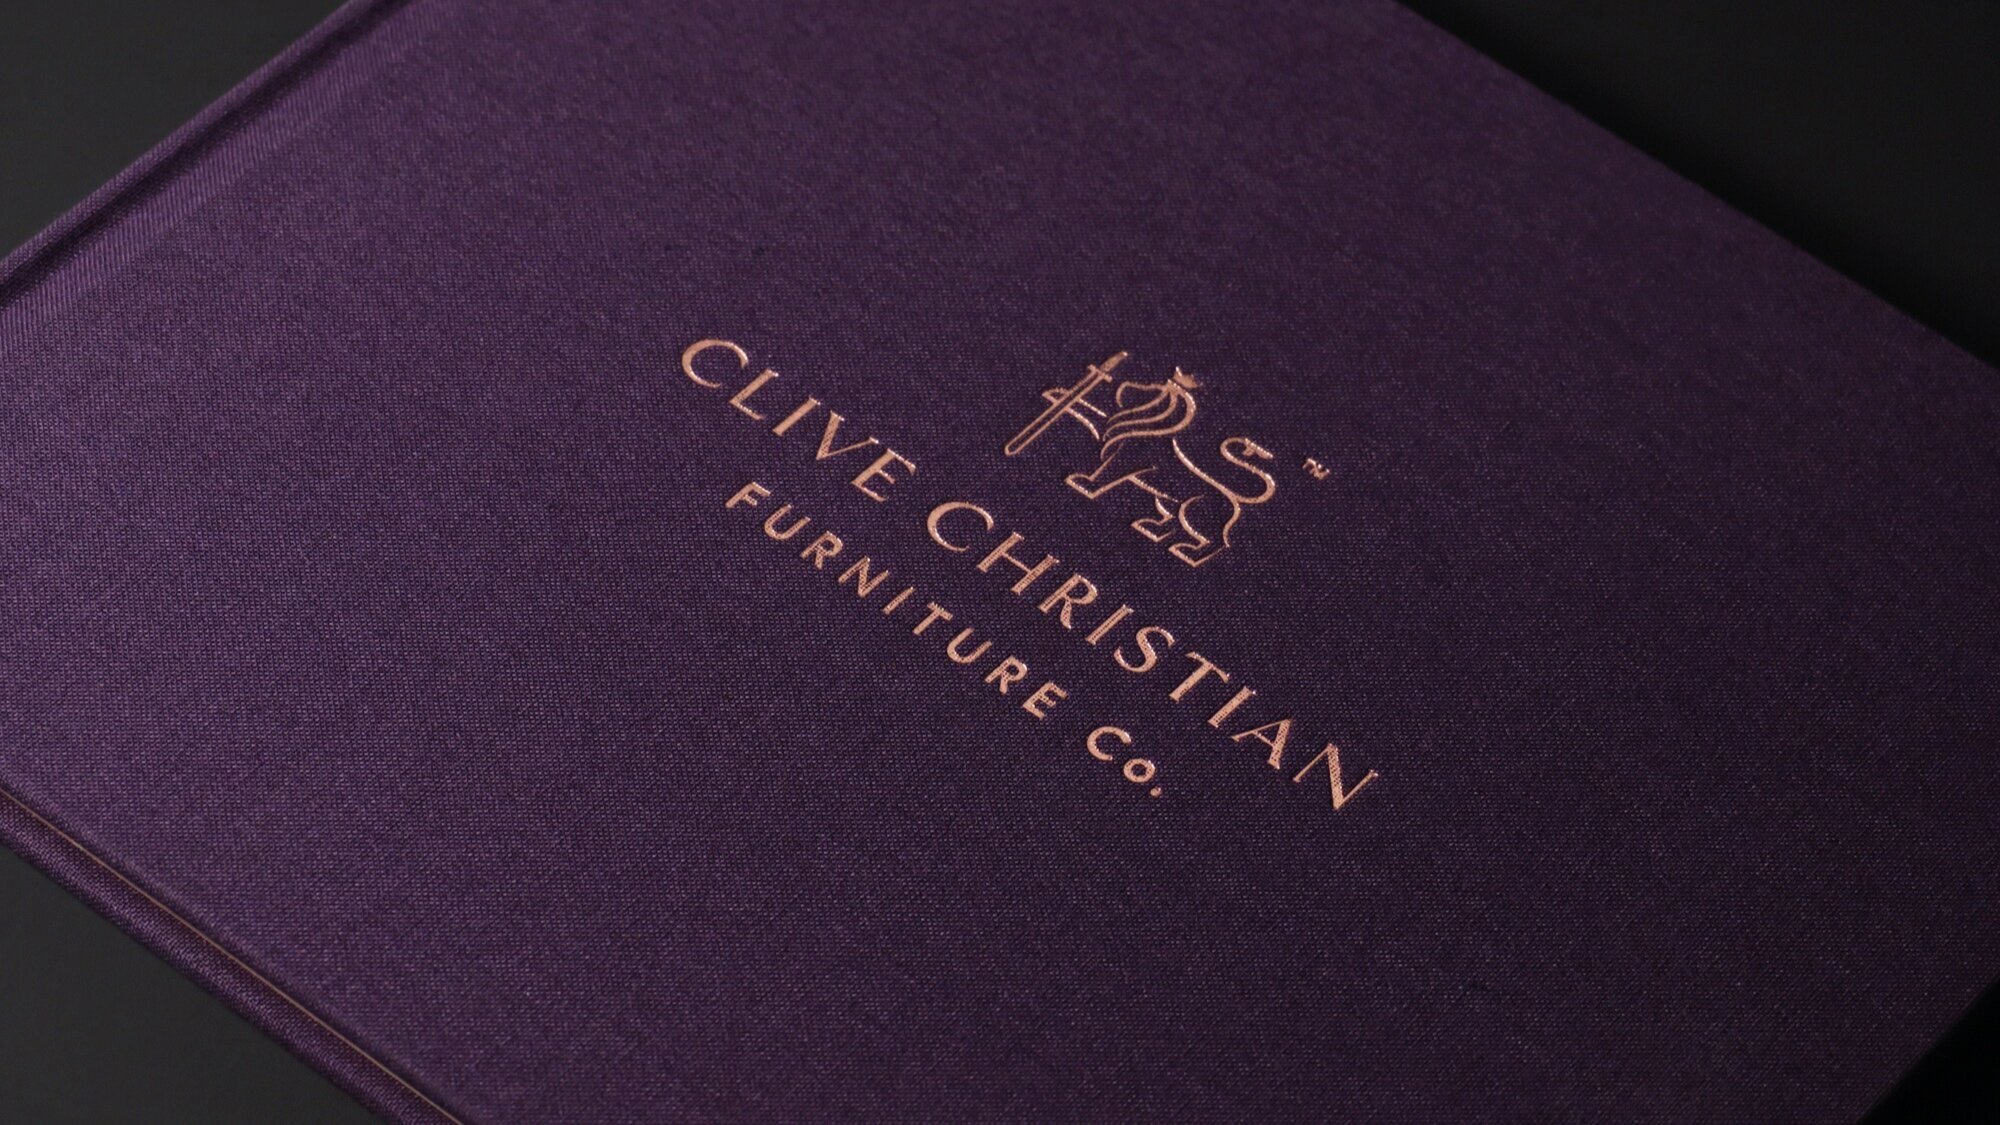 Clive Christian Furniture Rebrand 